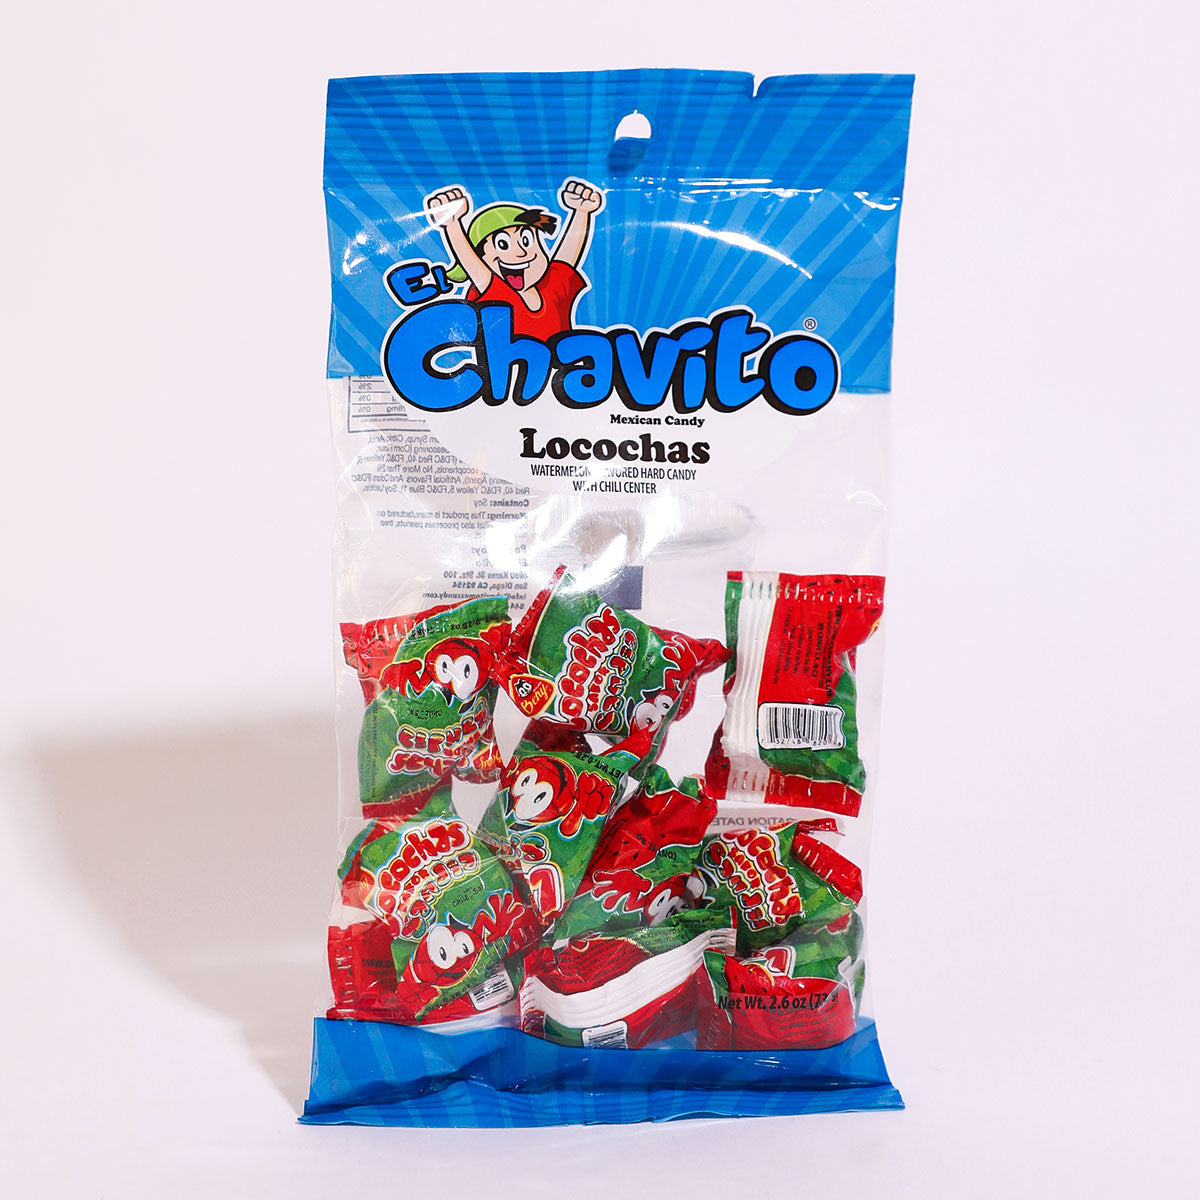 El Chavito: Locochas